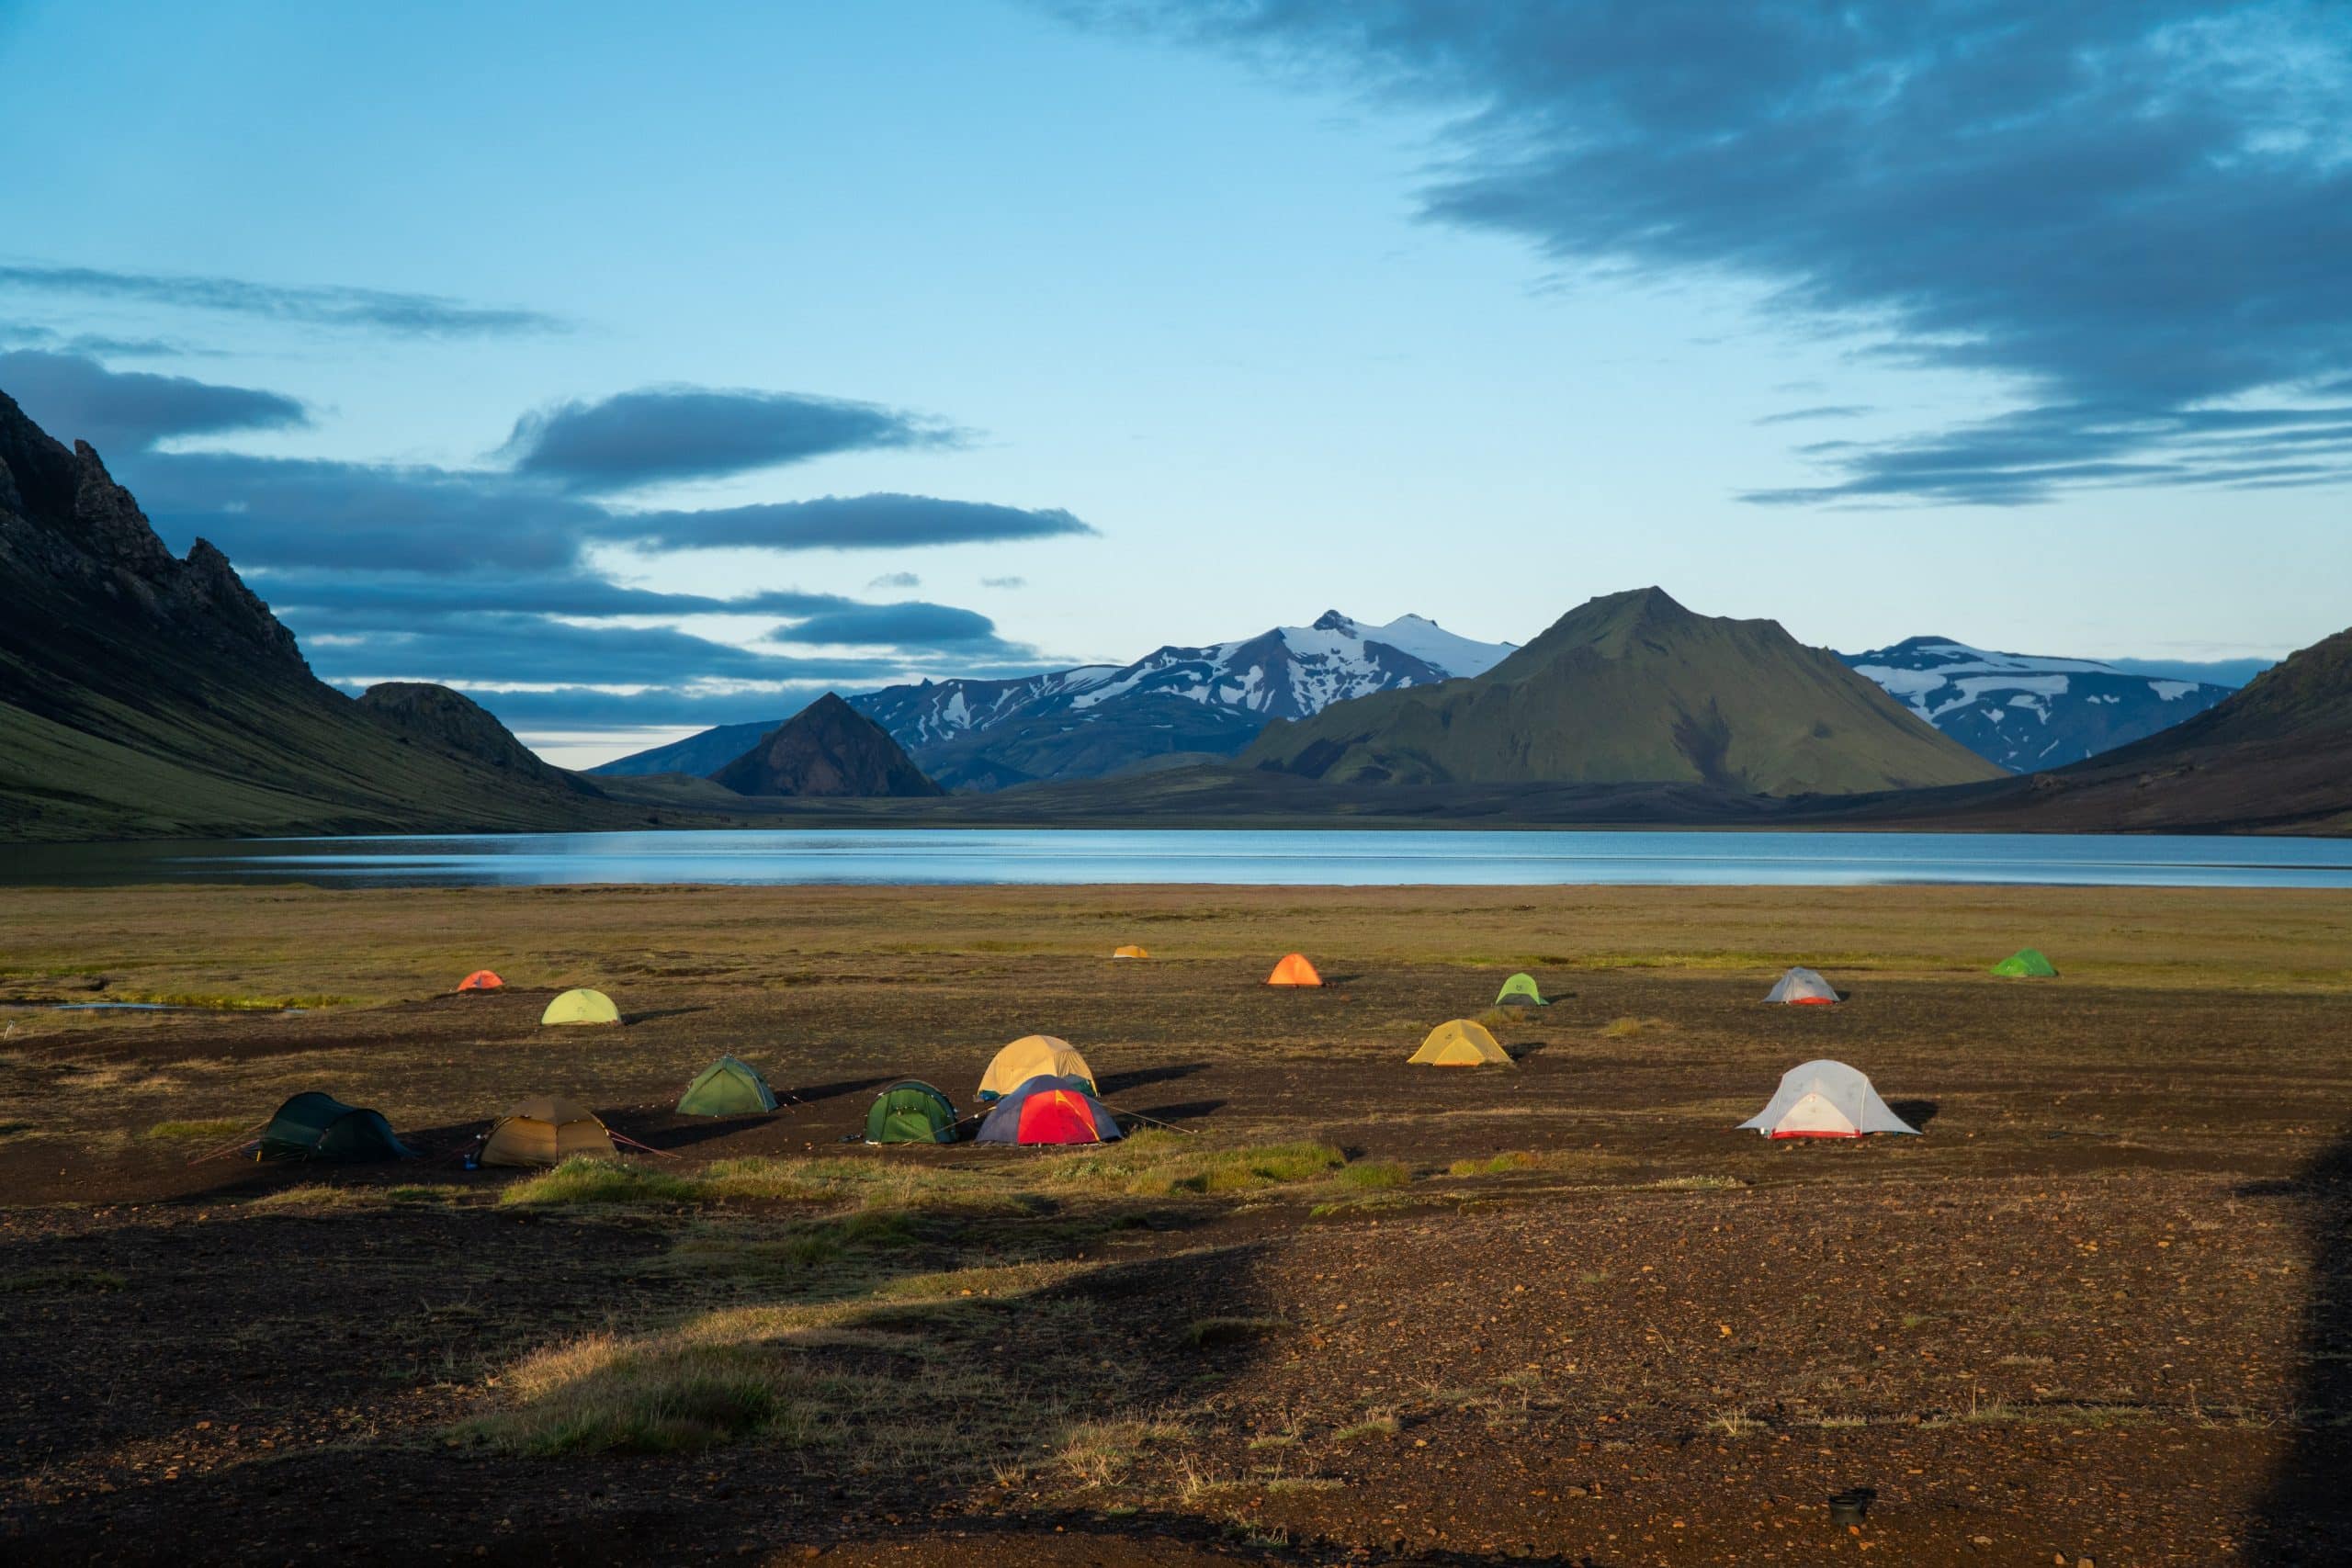 Tentes dans un camping dans les hautes terres islandaises, surplombant un lac.